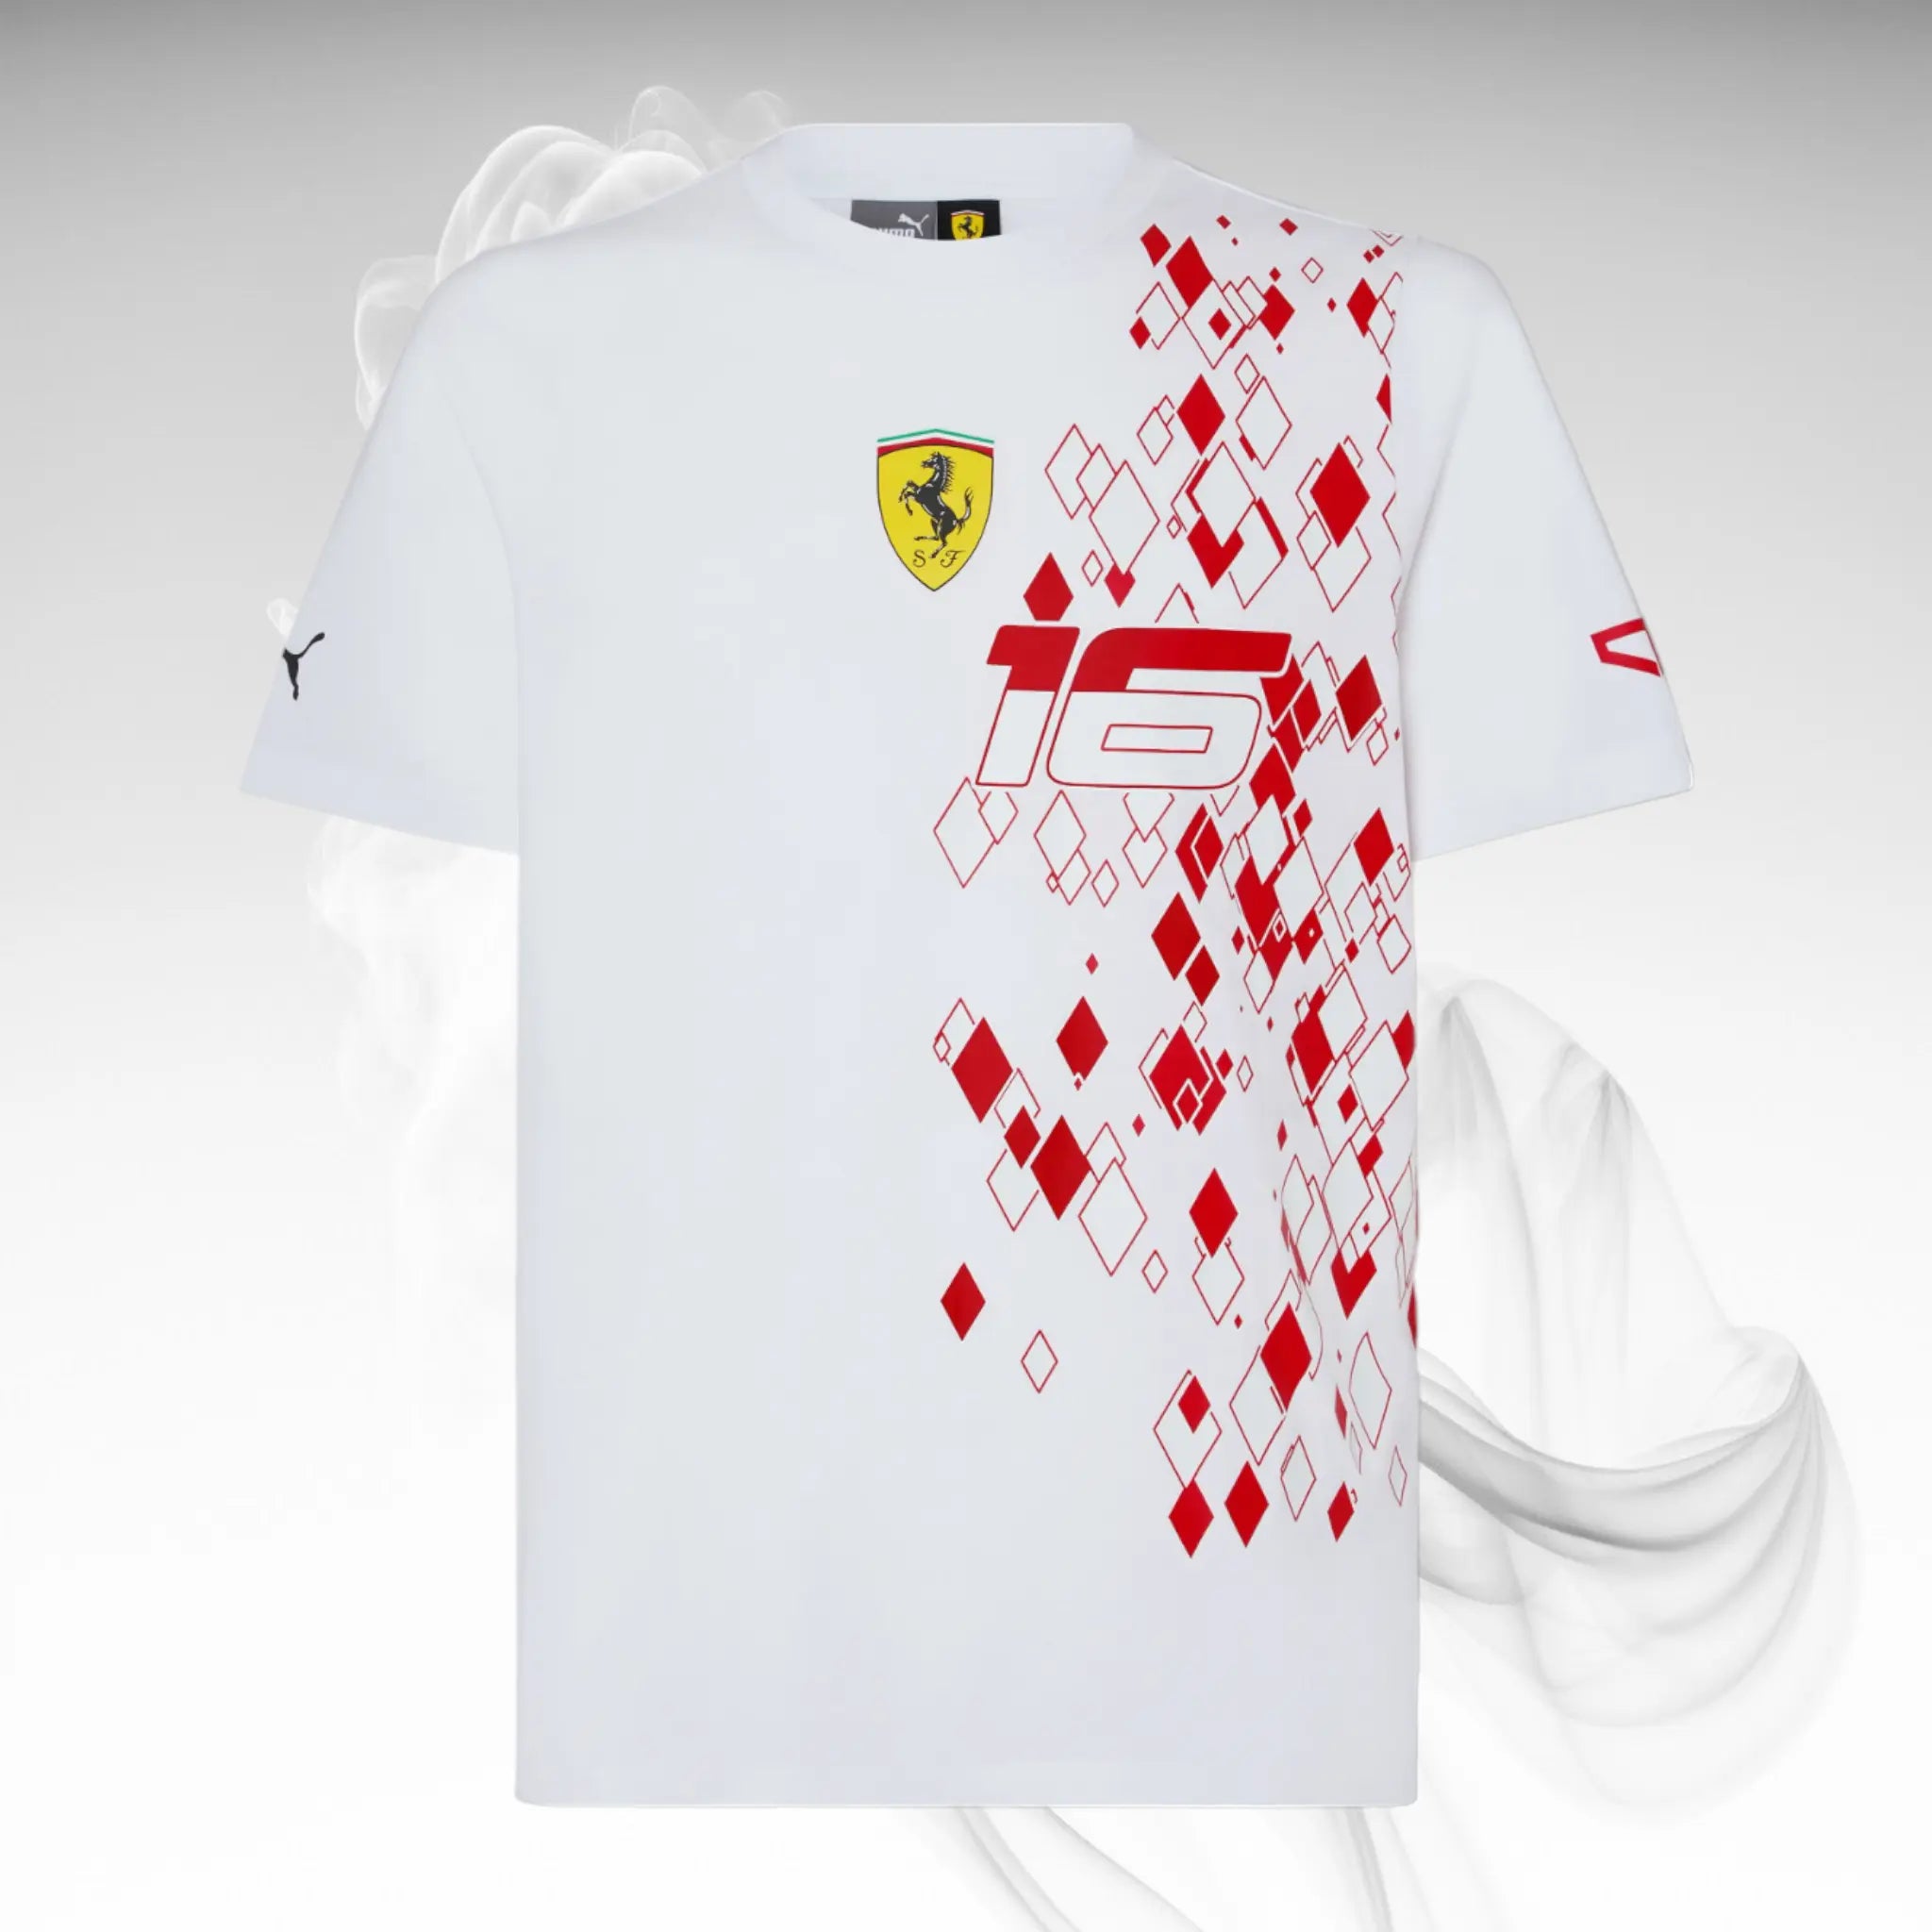 ScuderiaFerrariTeamLeclercReplicaT-shirt-MonacoSpecialEdition_2.webp